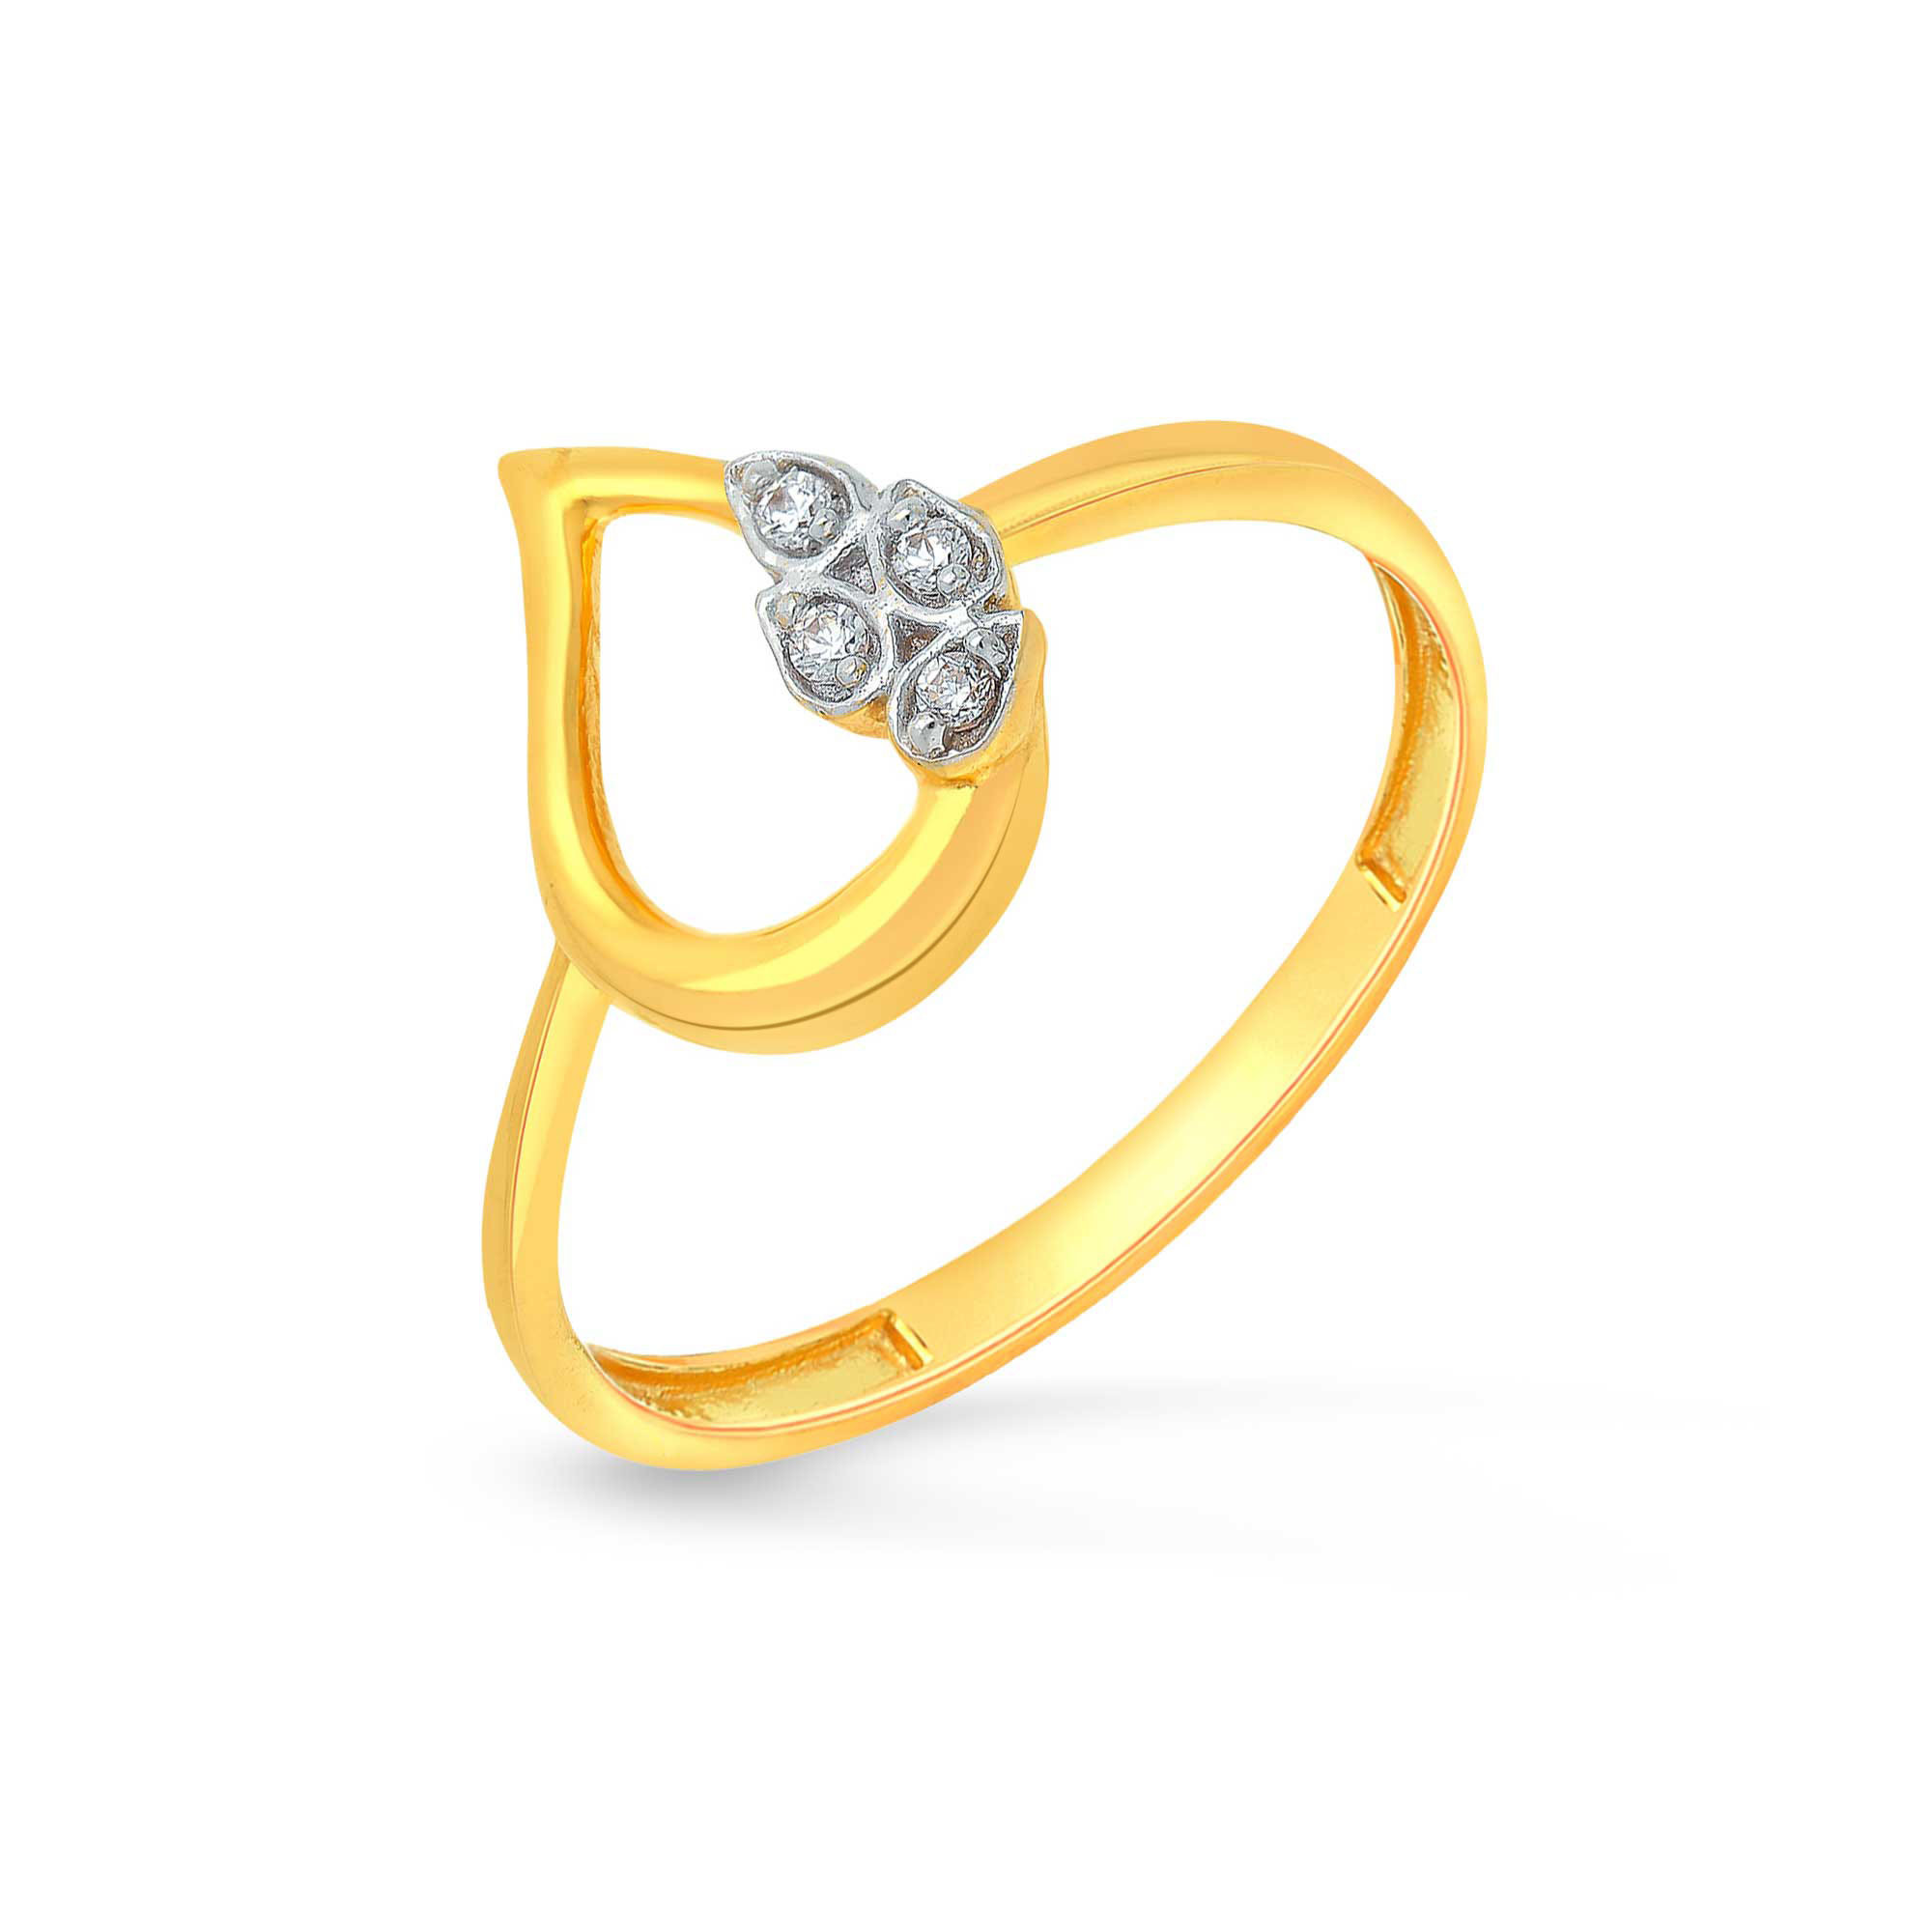 Phoenix Diamond Ring Jewellery India Online - CaratLane.com